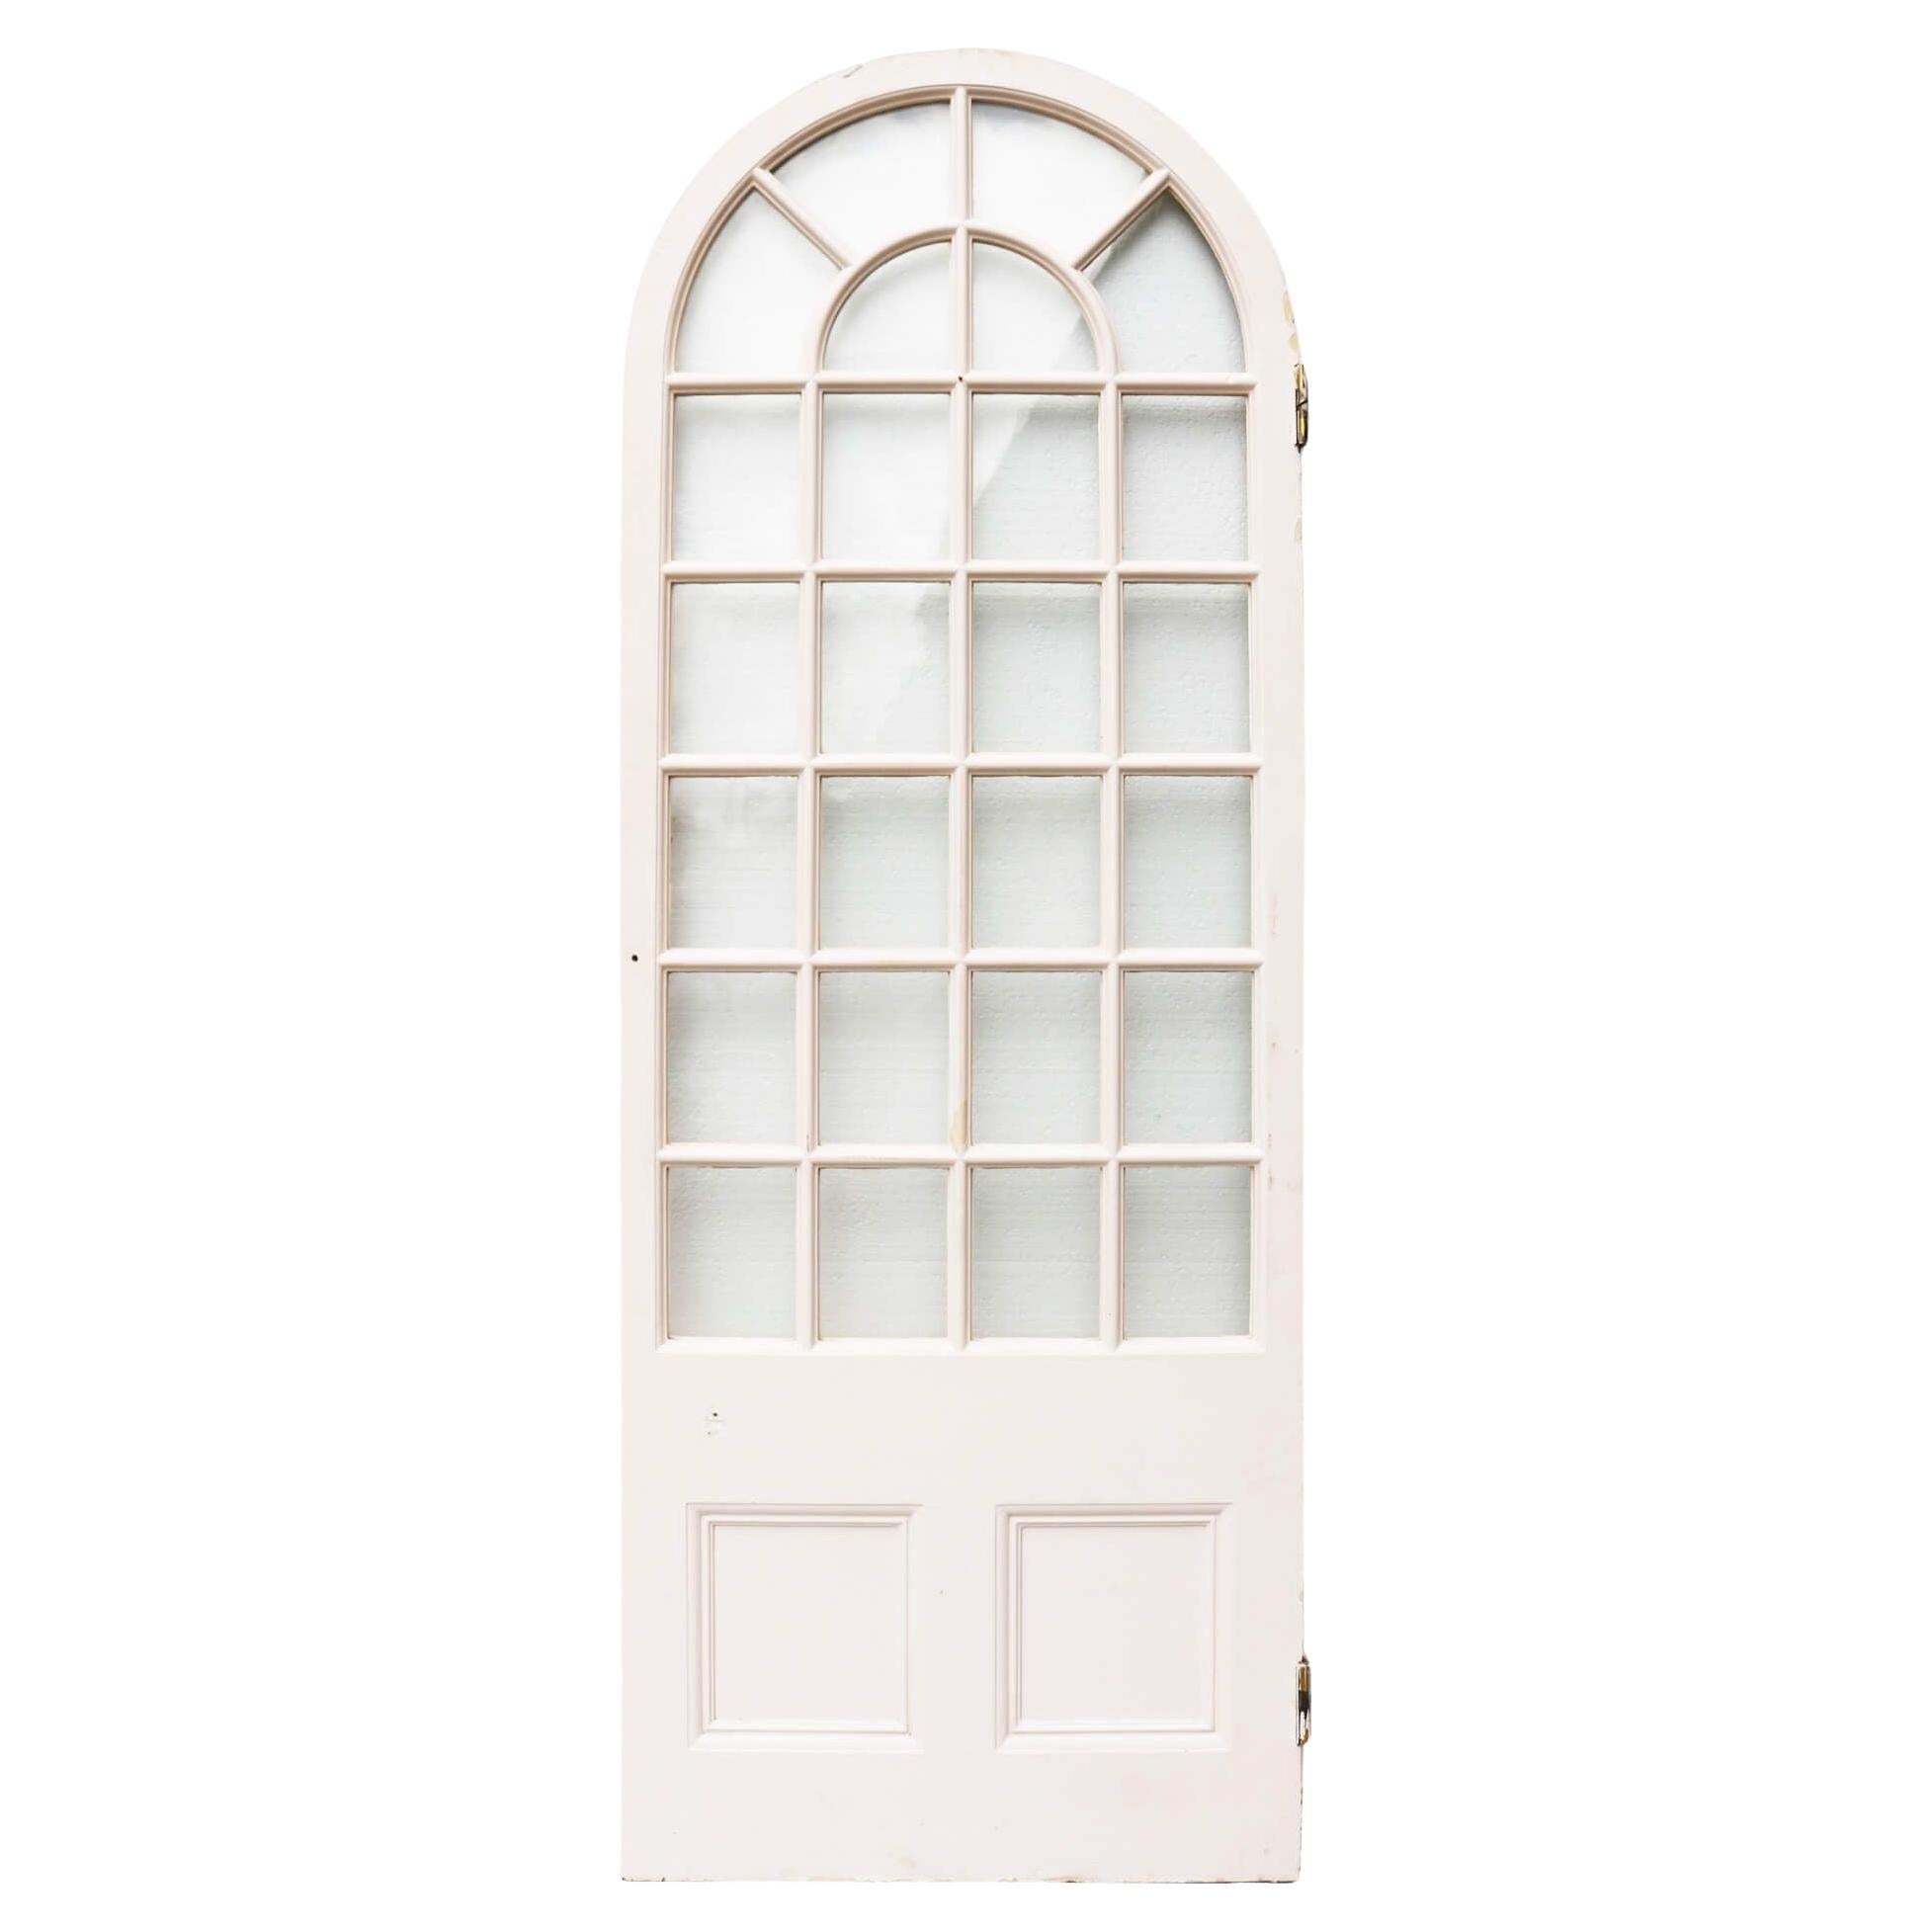 Ancienne porte victorienne cintrée vitrée blanche